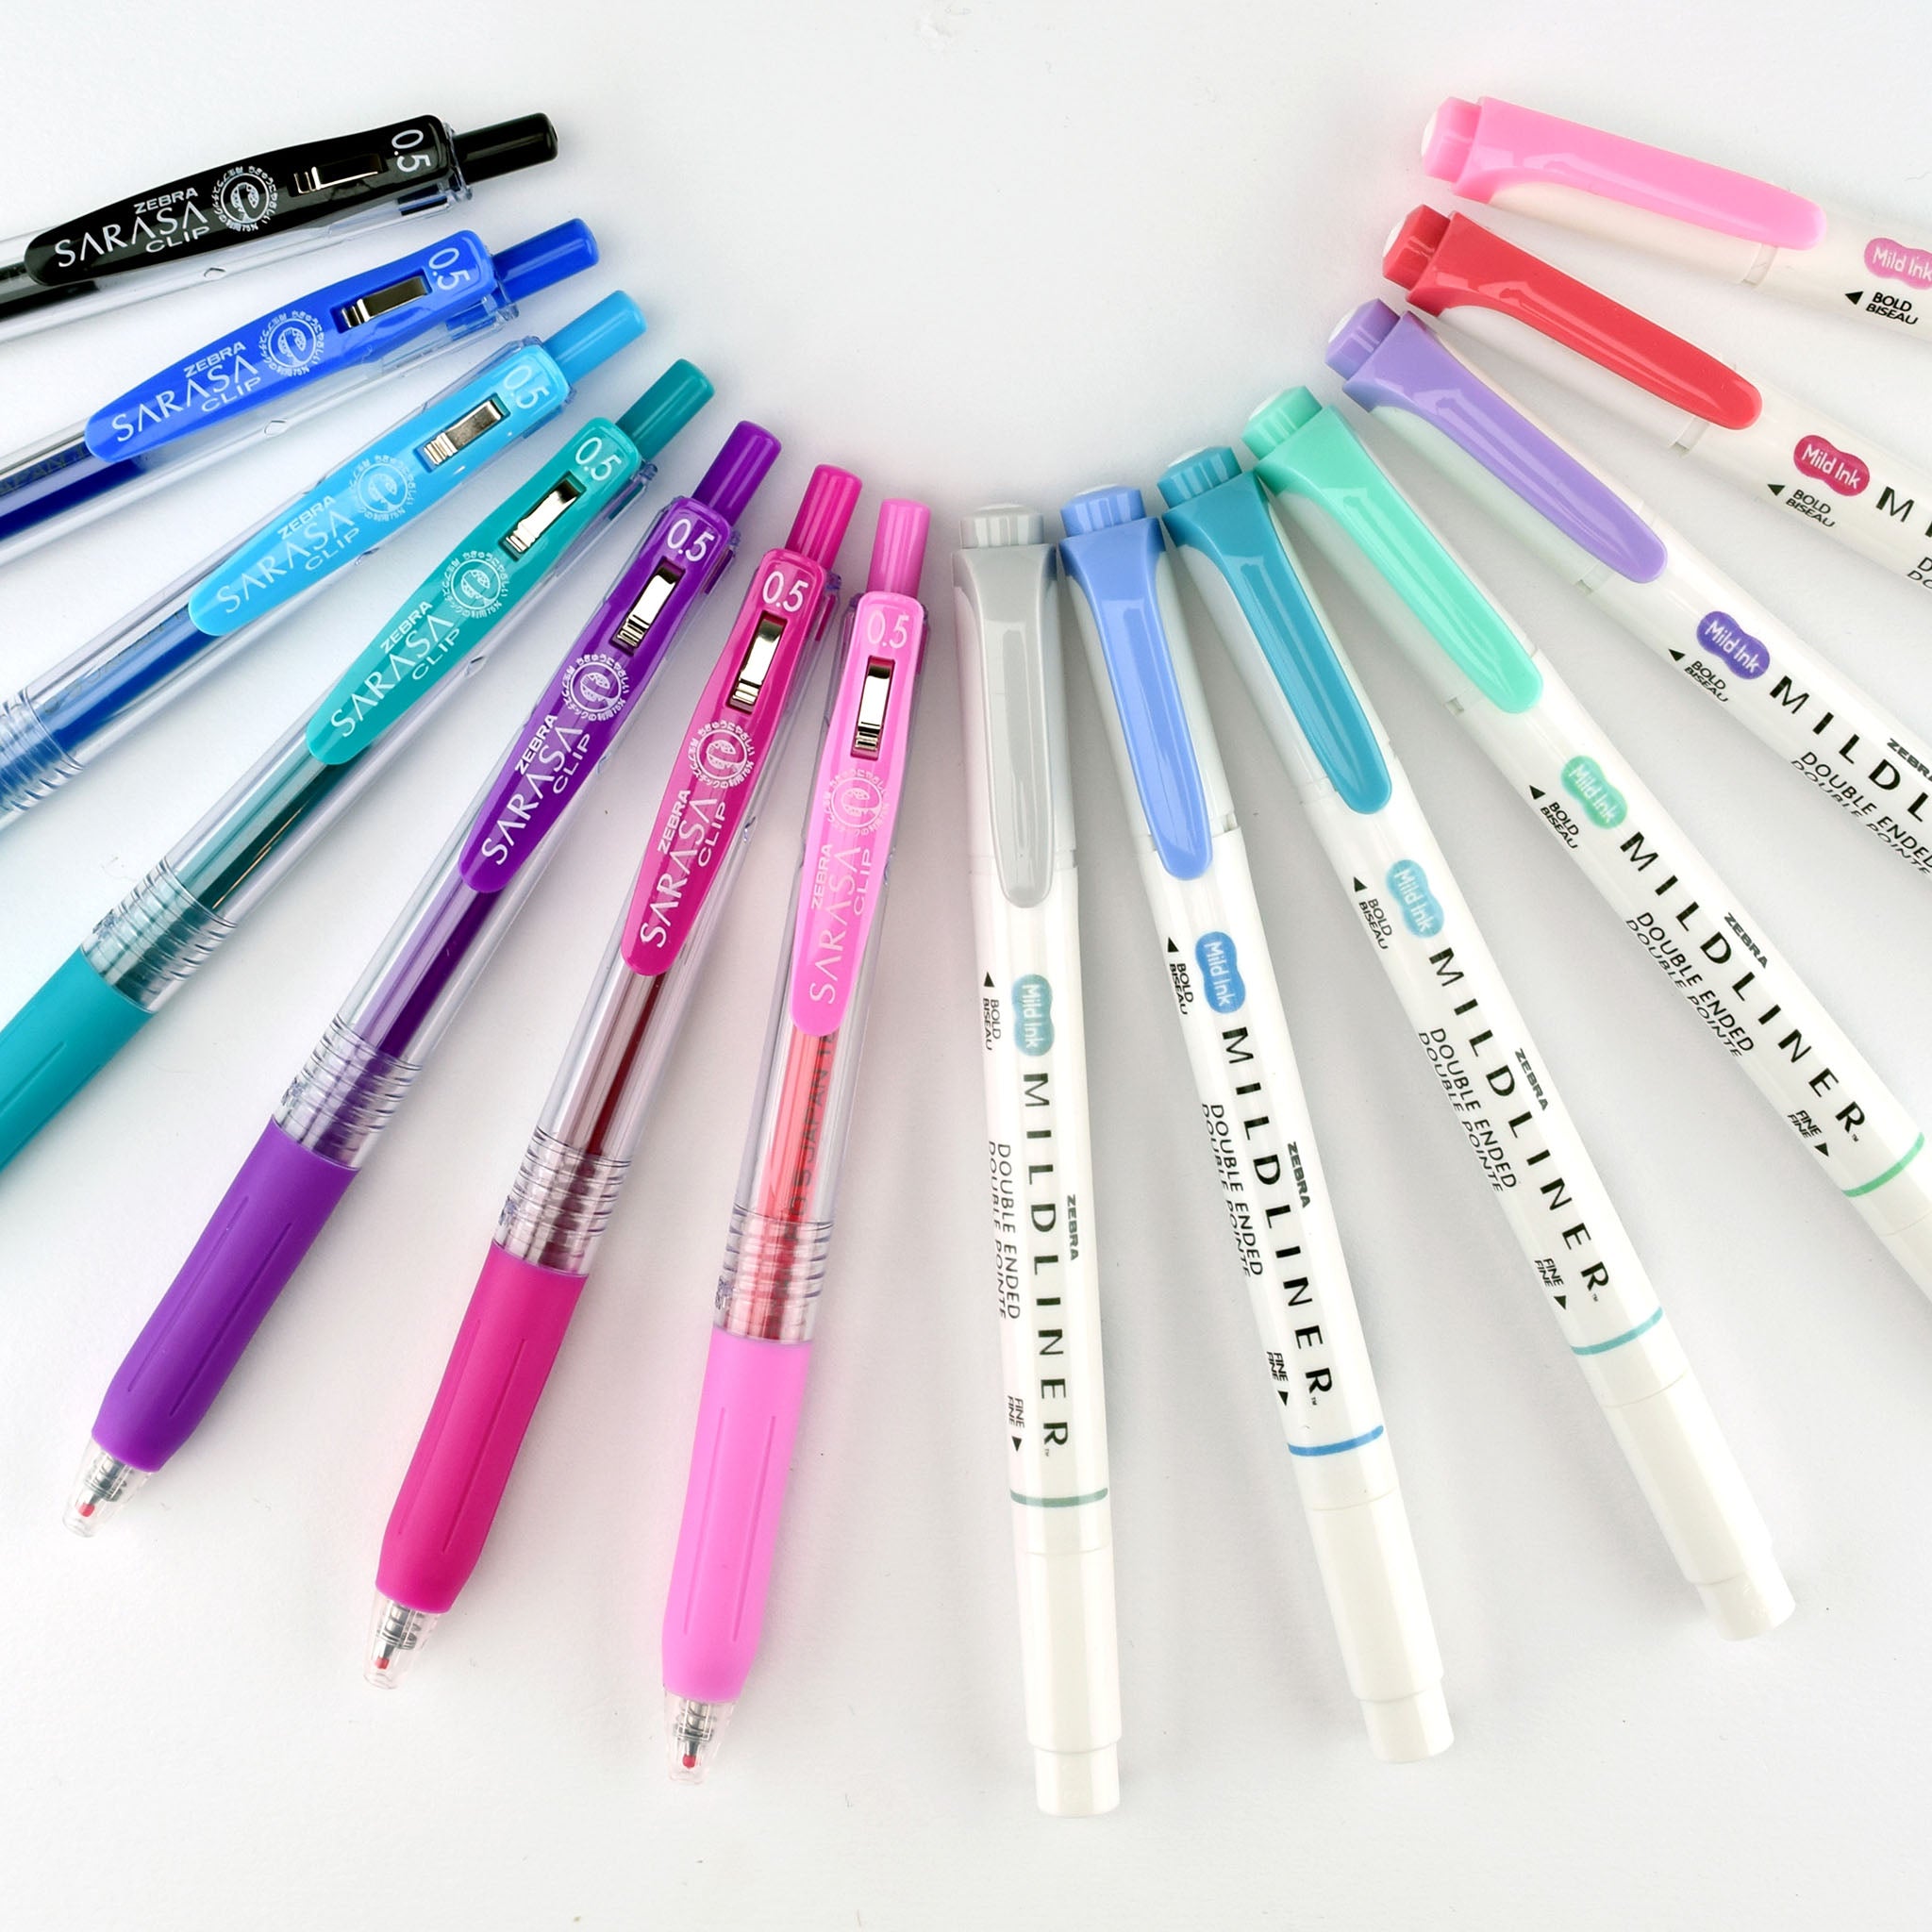 Zebra Pen Journaling Set, Includes 7 Mildliner Highlighters and 7